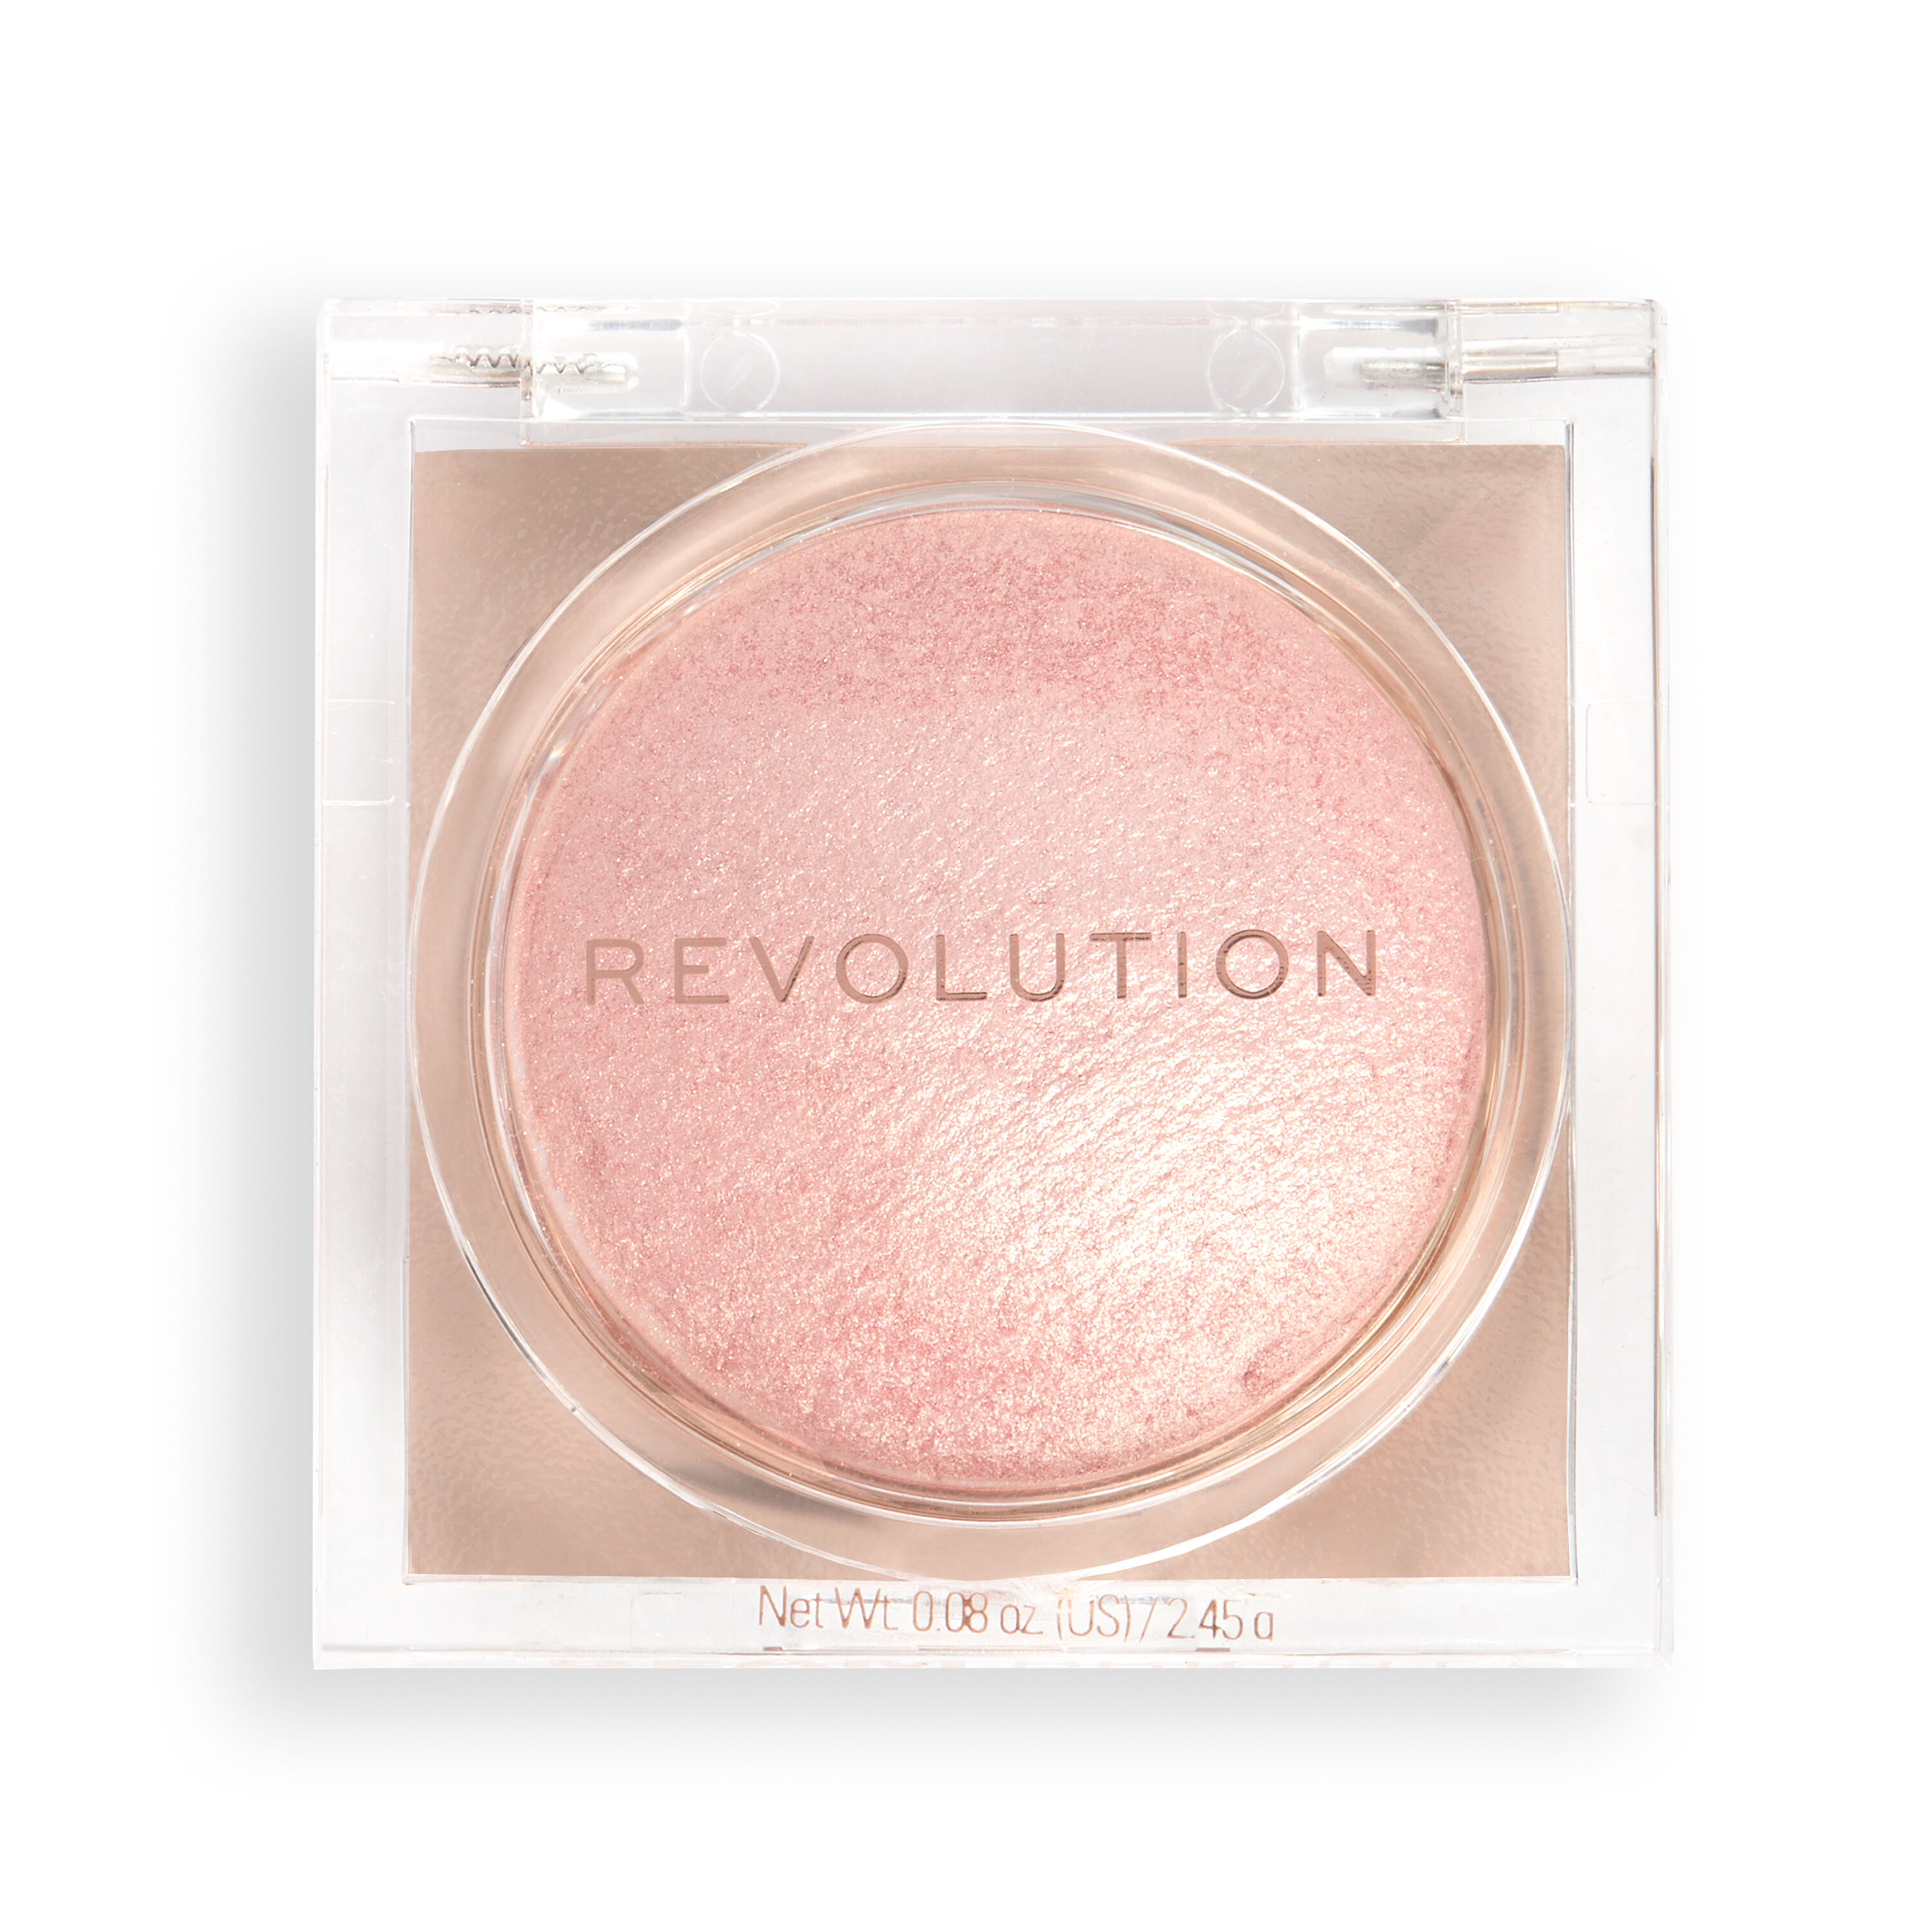 Хайлайтер Makeup Revolution Powder Highlighter Beam Bright Pink Seduction эксмо тревога не то чем кажется 8 способов обрести мир с самим собой 16